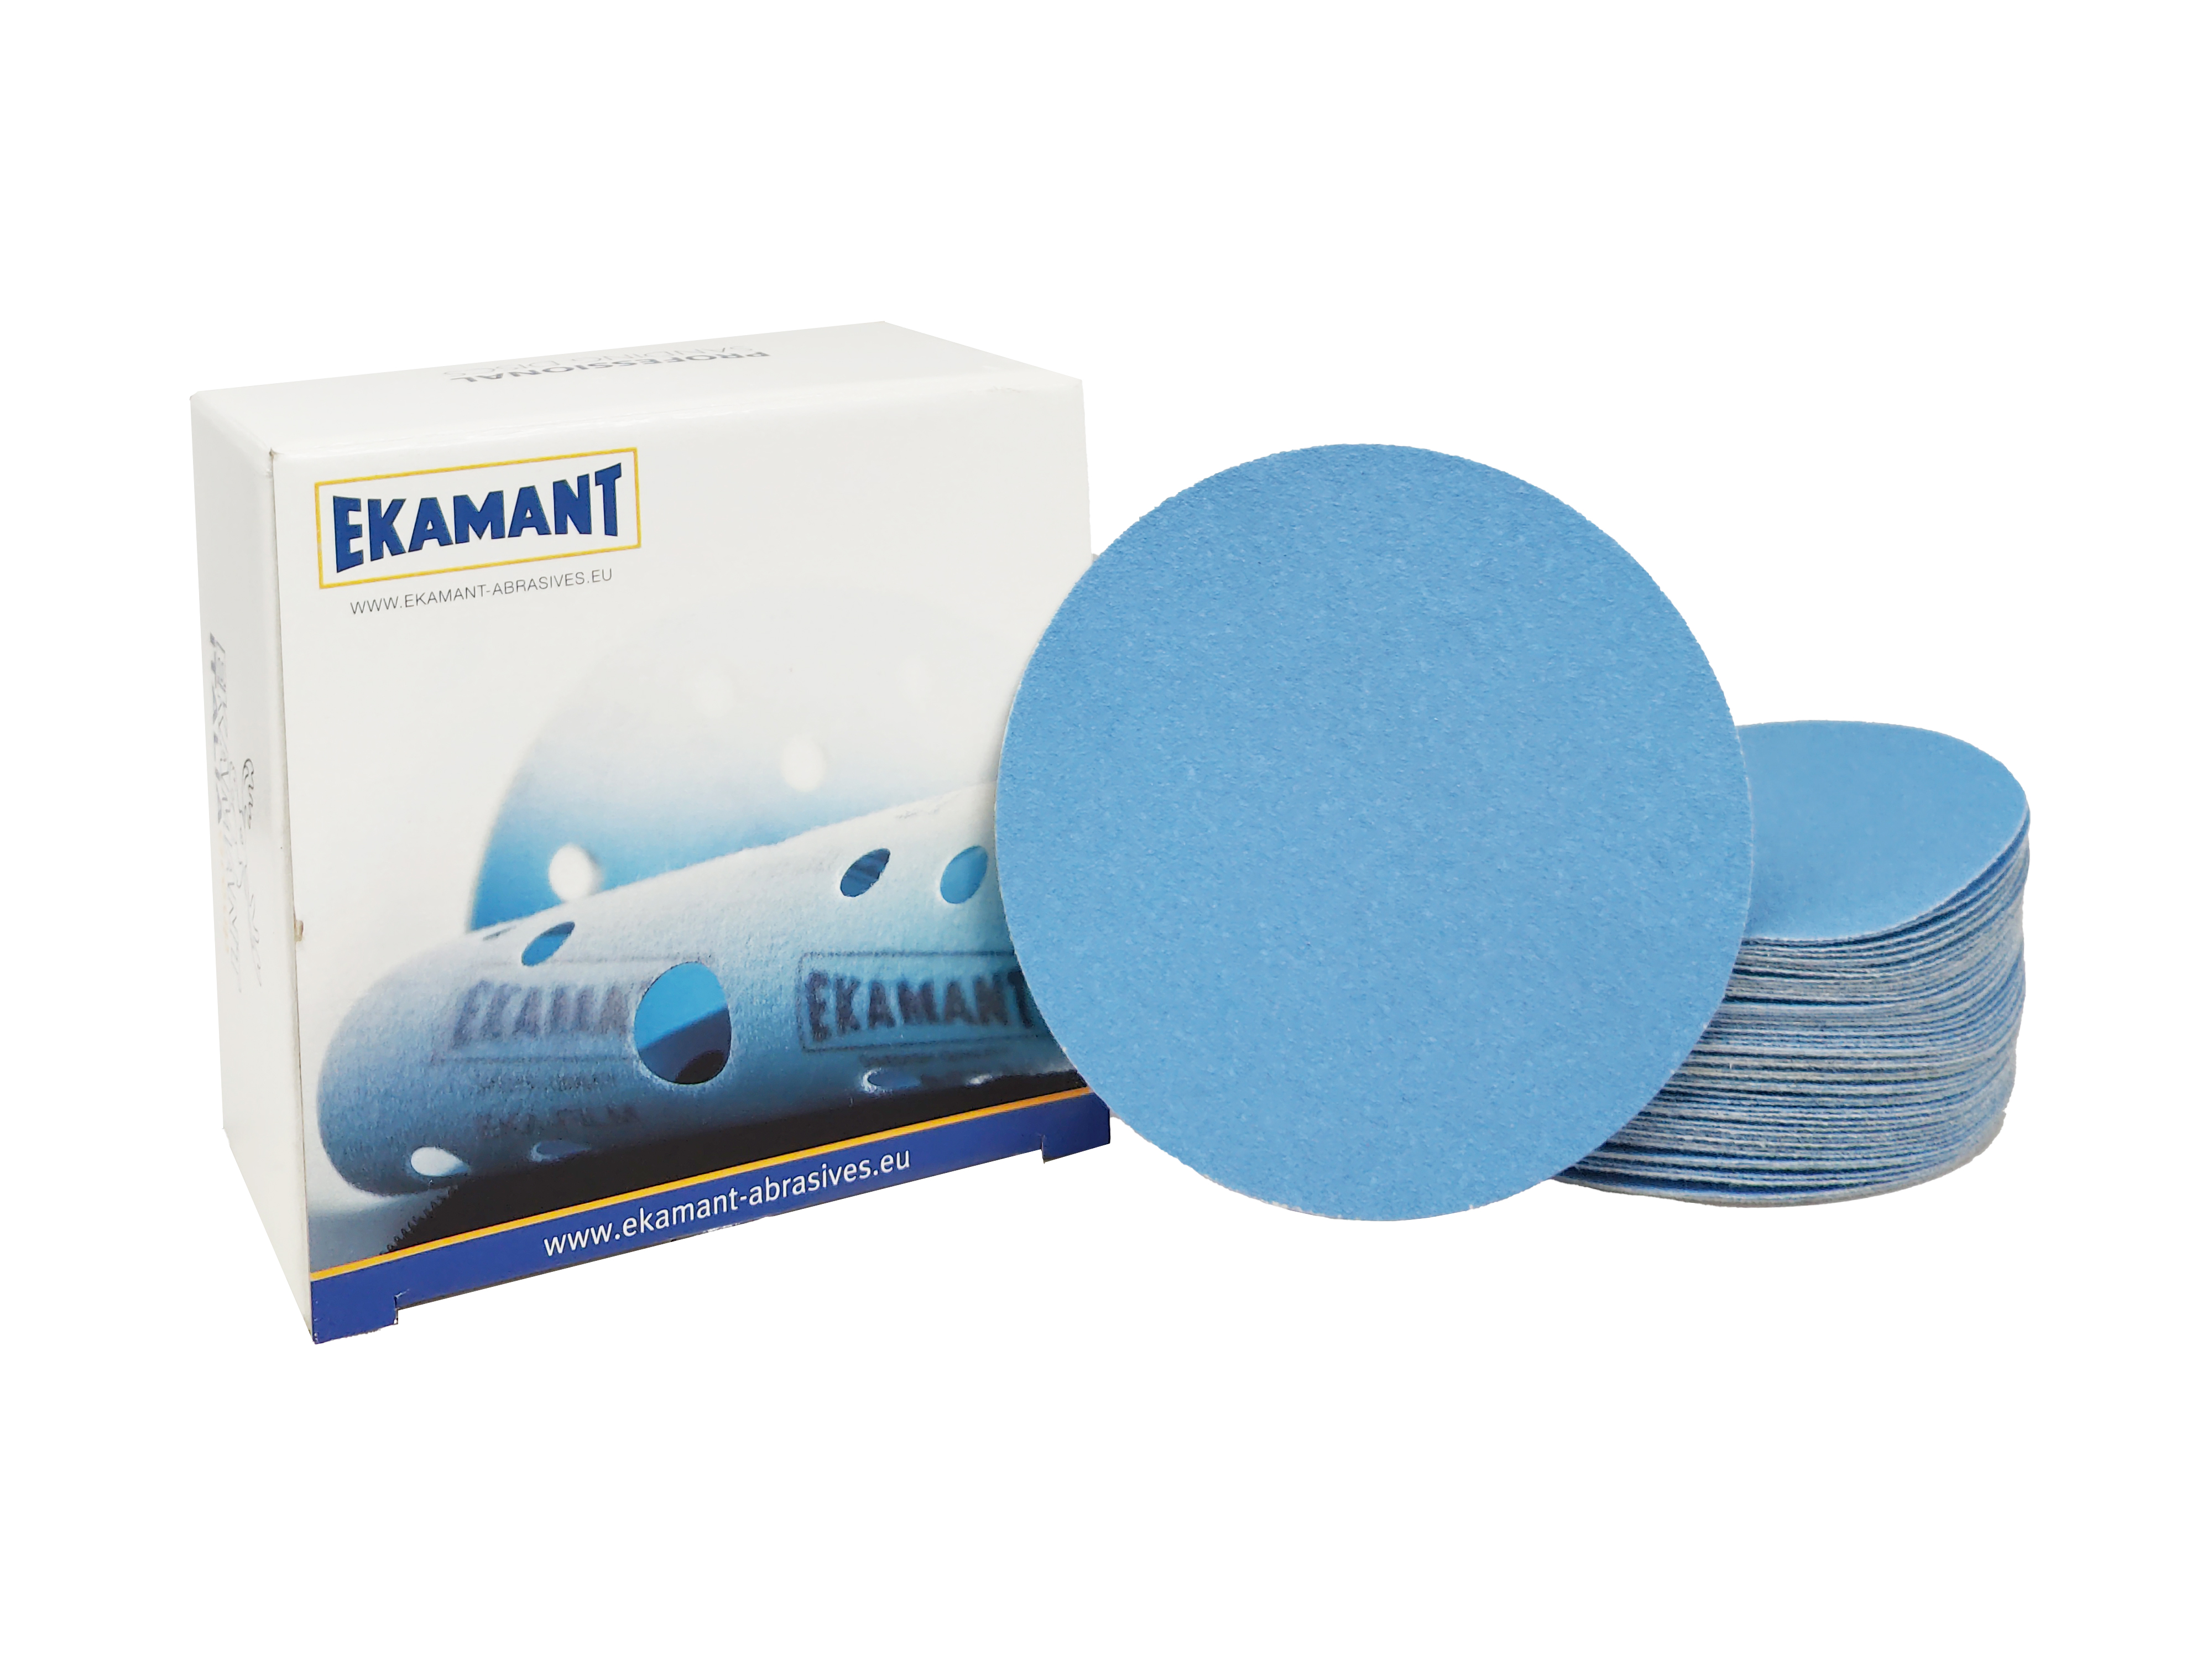 Abbildung Ekamant Eka Blue +V 150mm Verpackung und Scheiben als Stapel.